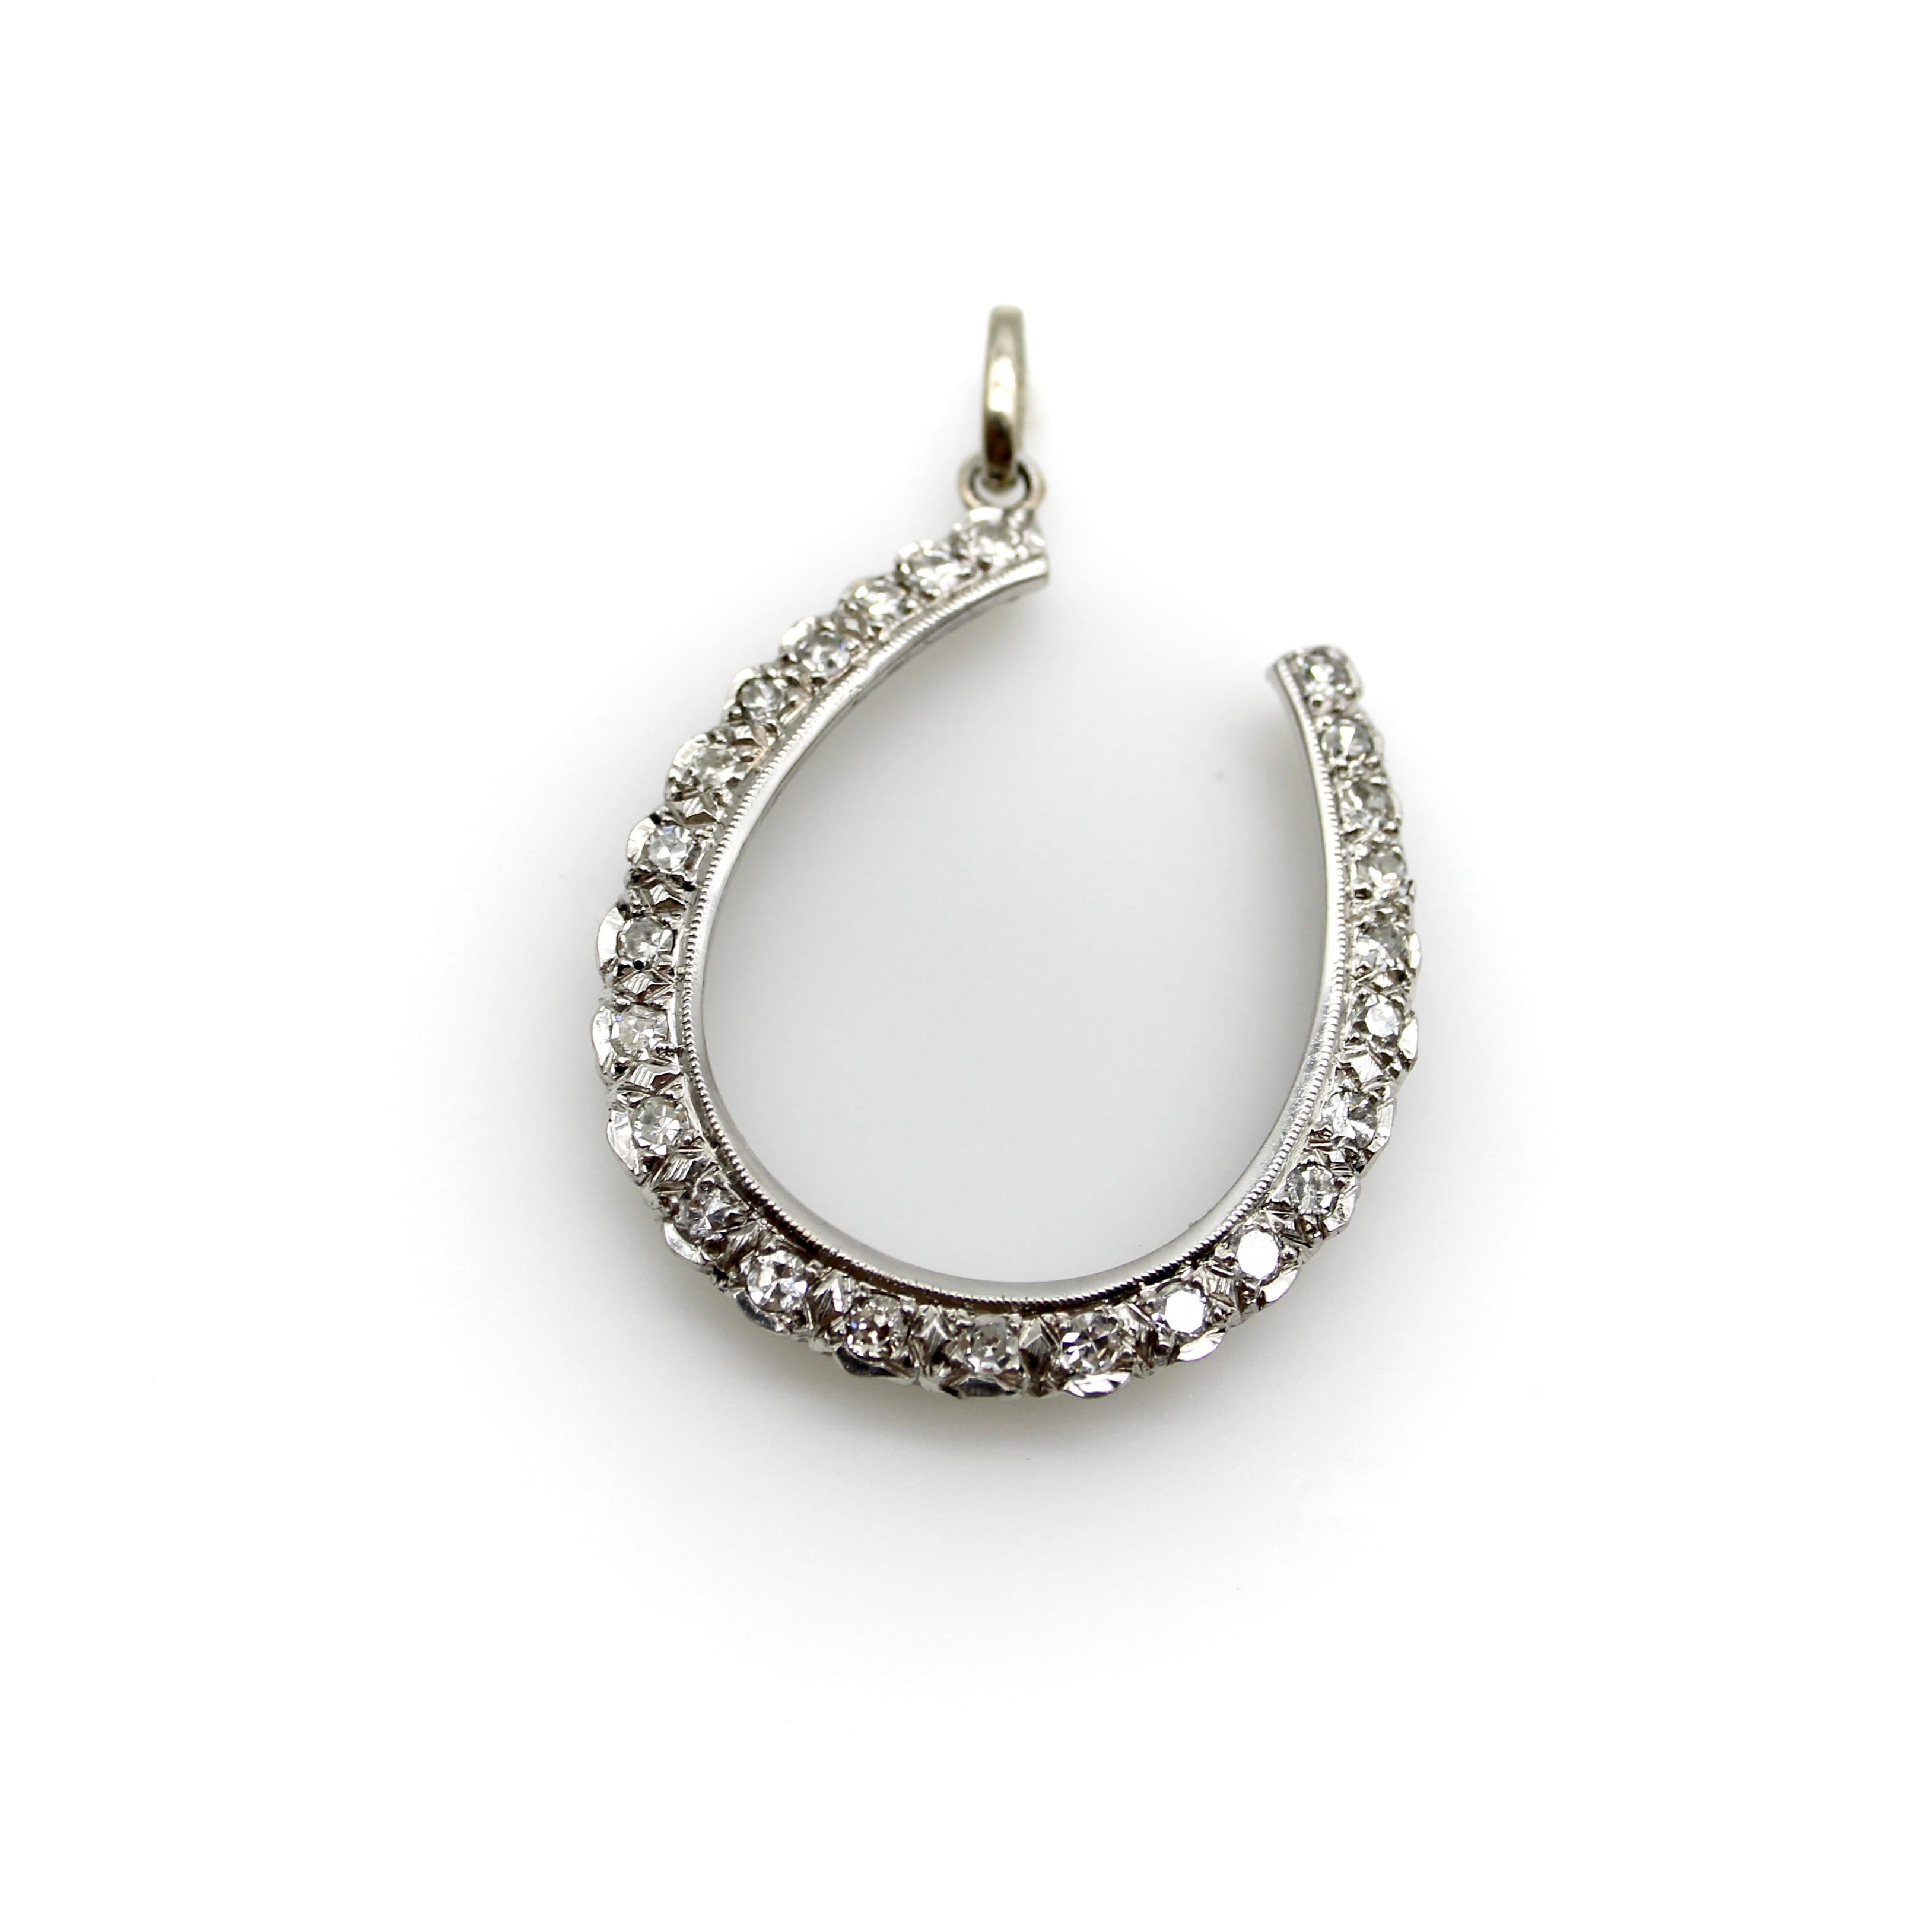 Circa 1900, ce pendentif en or 12k en forme de fer à cheval porte-bonheur contient 25 étincelants diamants taille unique sertis en perle avec un travail de taille brillant. La monture présente des bords festonnés le long de la bordure extérieure